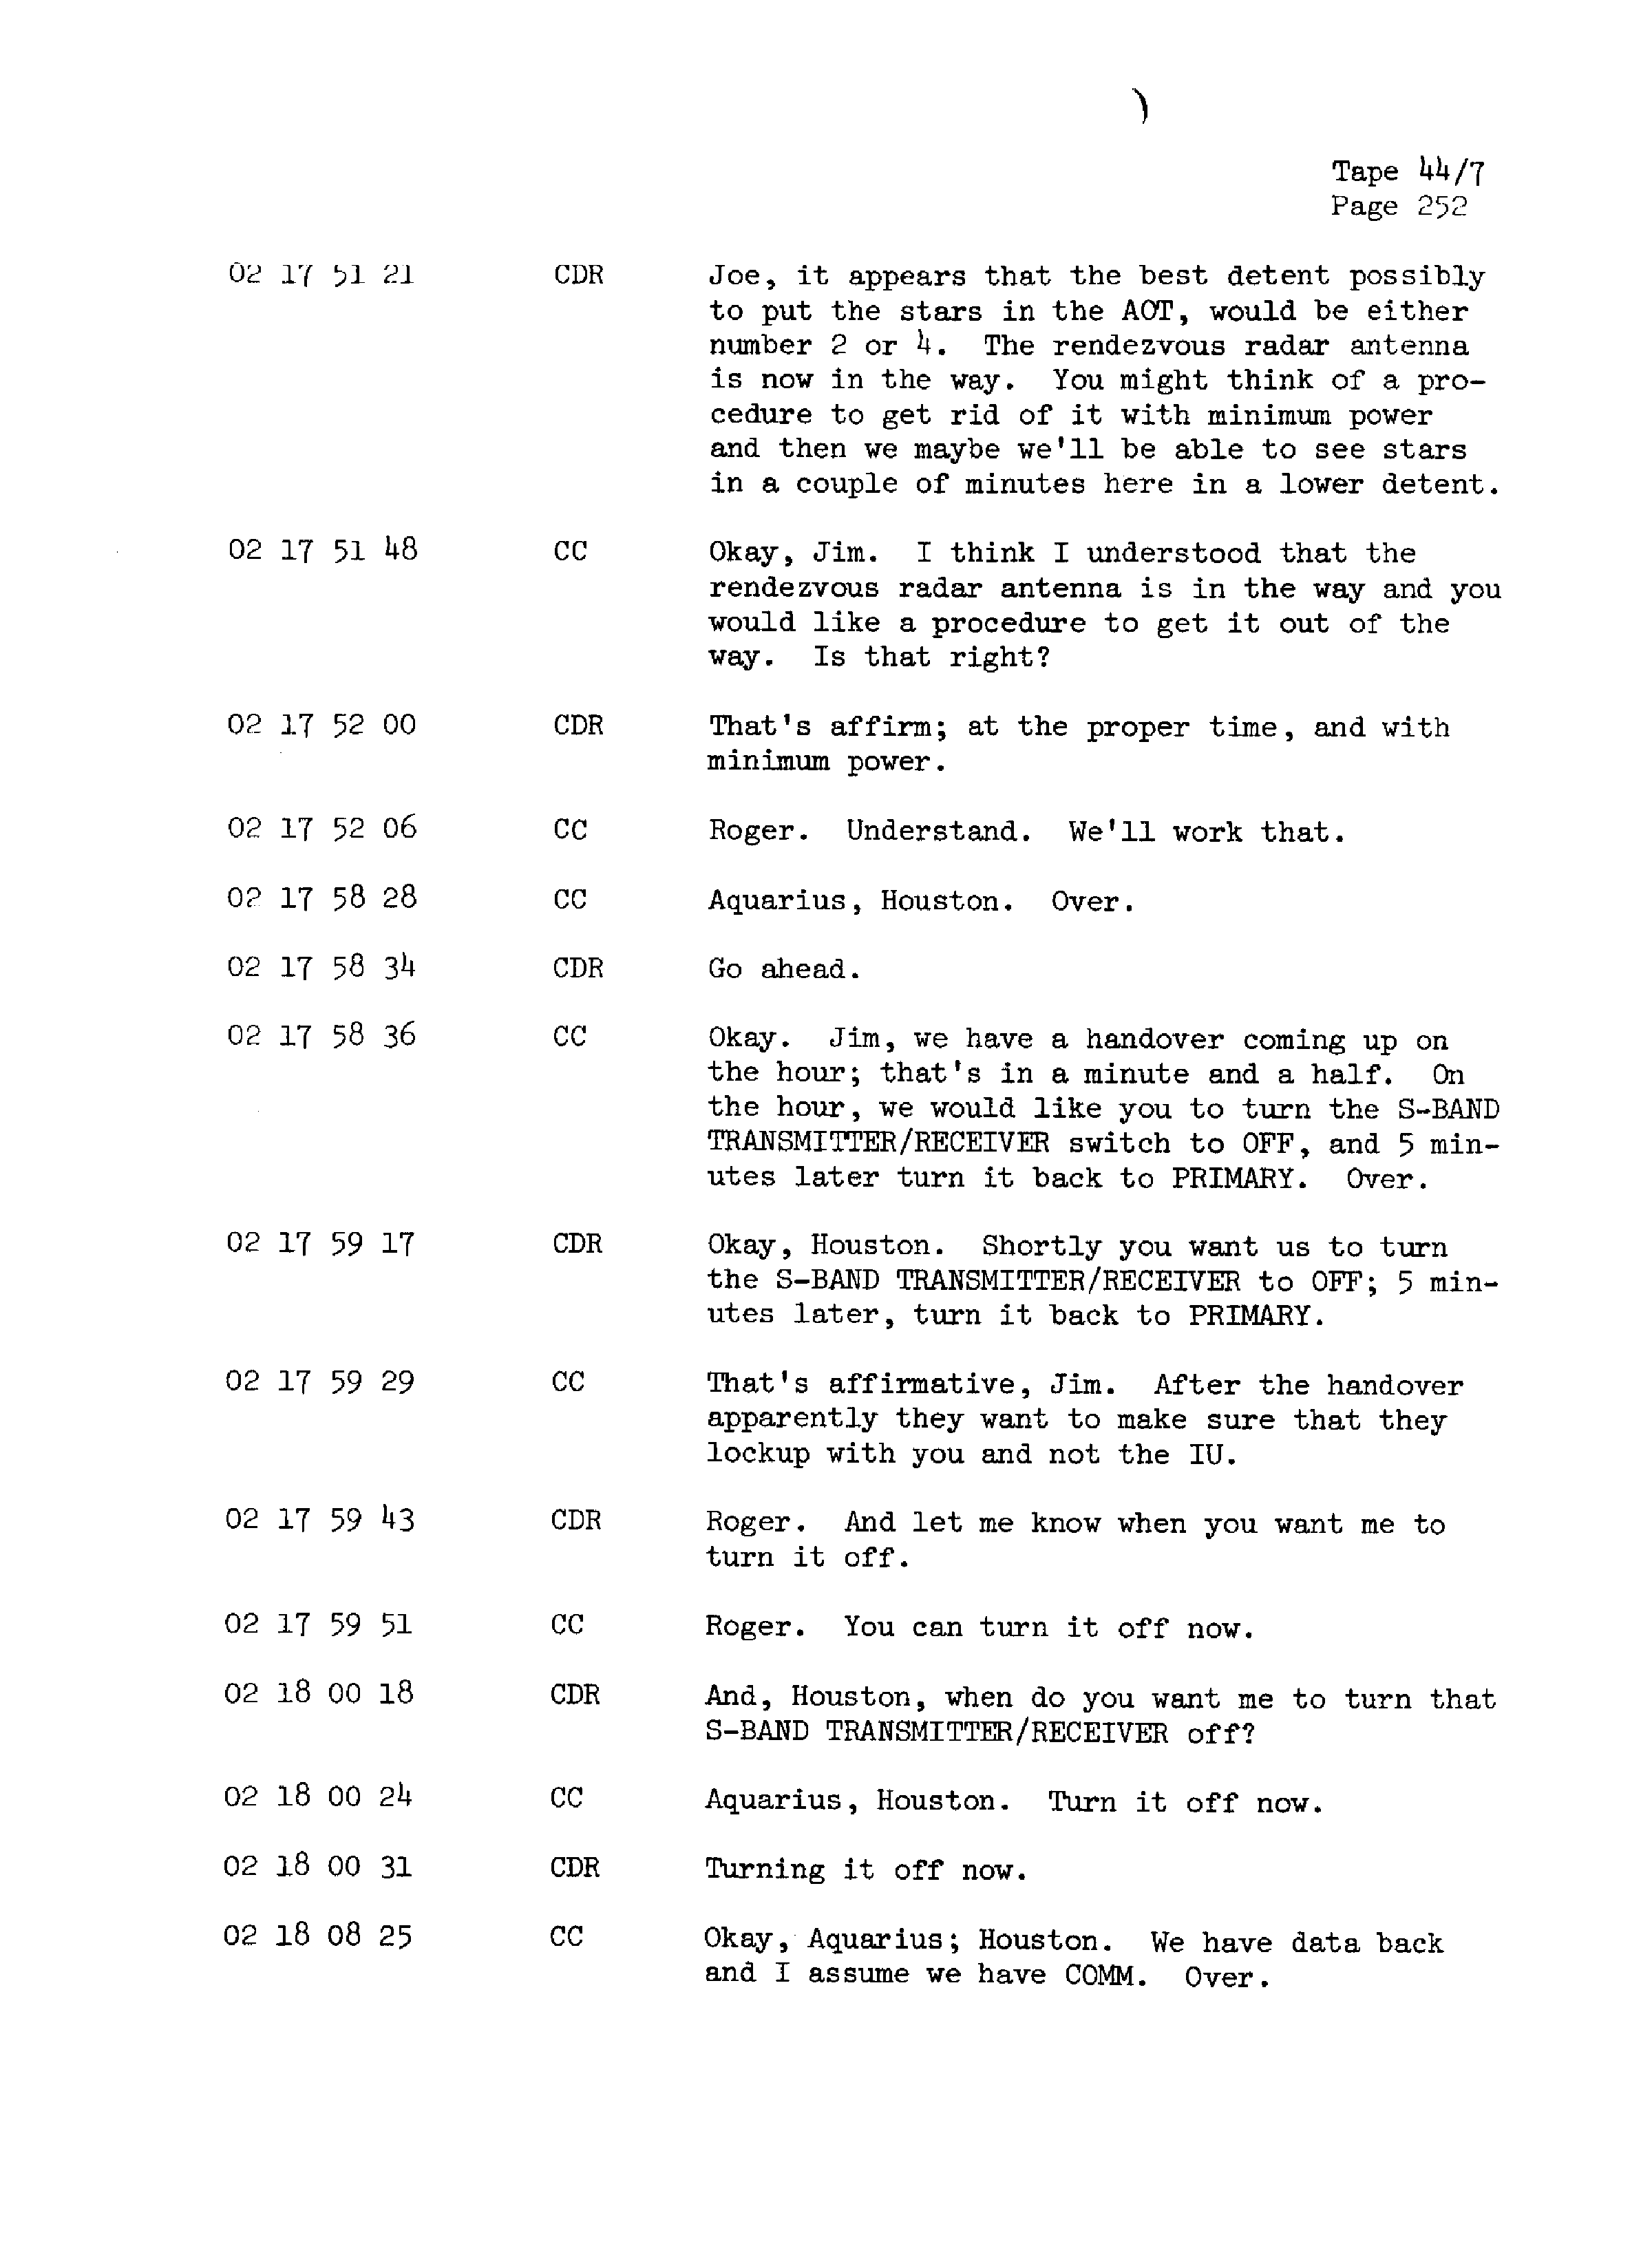 Page 259 of Apollo 13’s original transcript